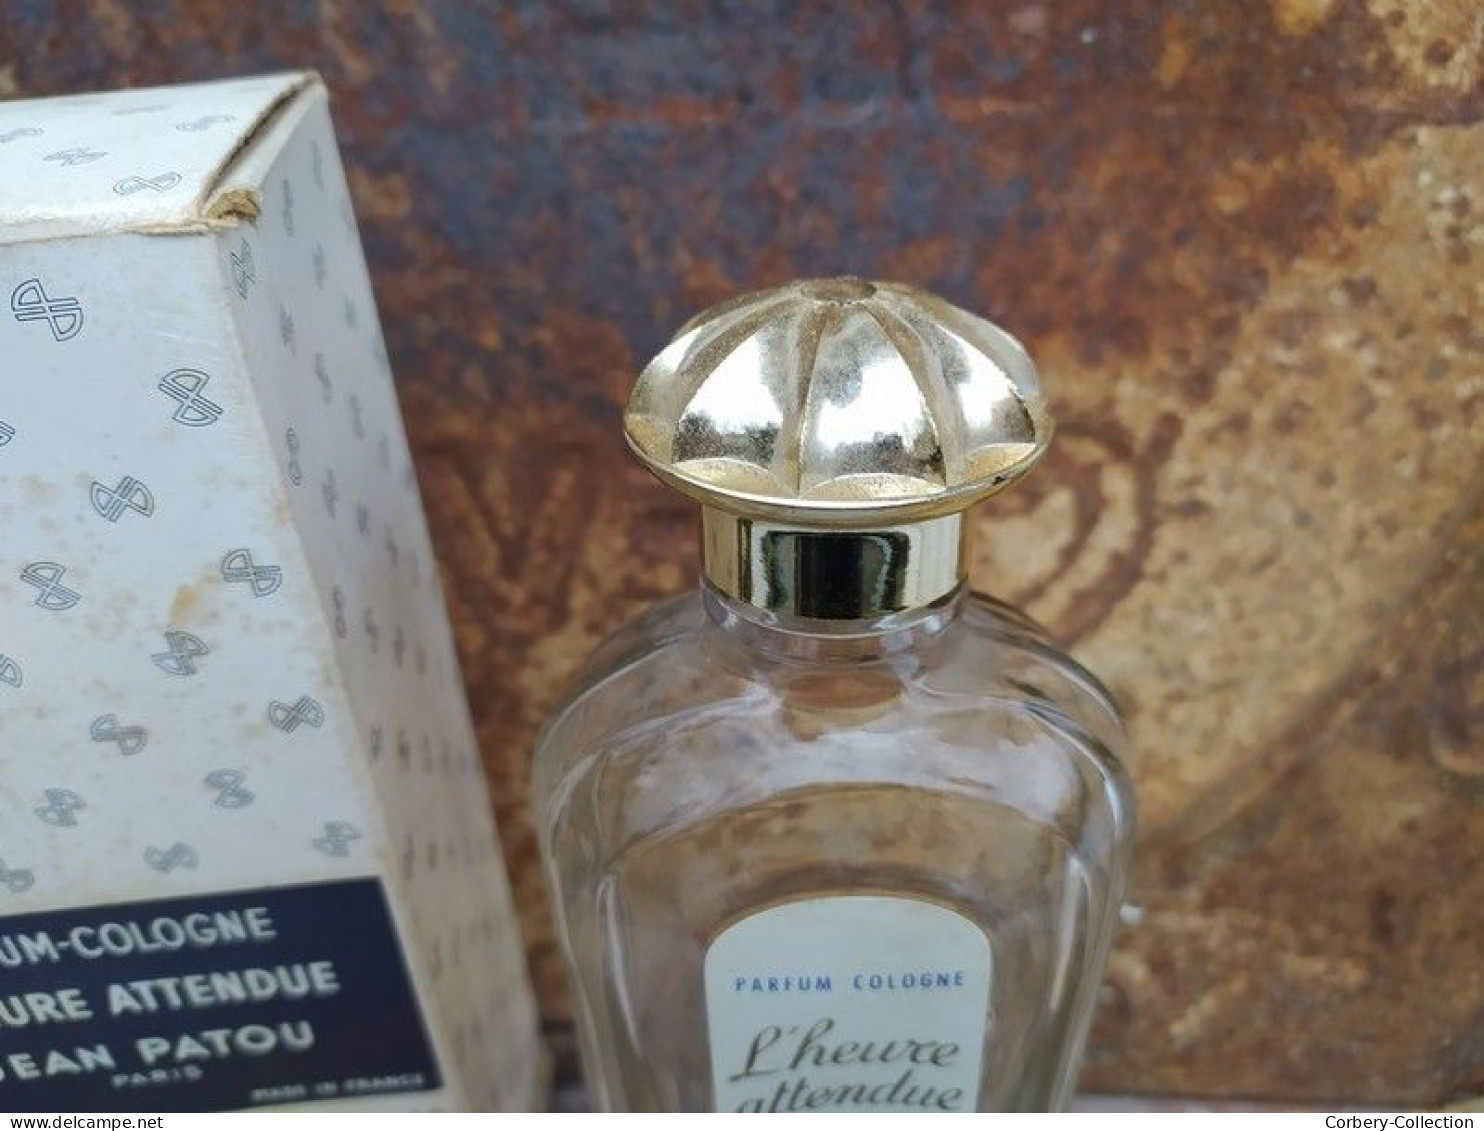 Ancien Flacon Parfum Jean Patou Paris L'Heure Attendue - Flesjes (leeg)